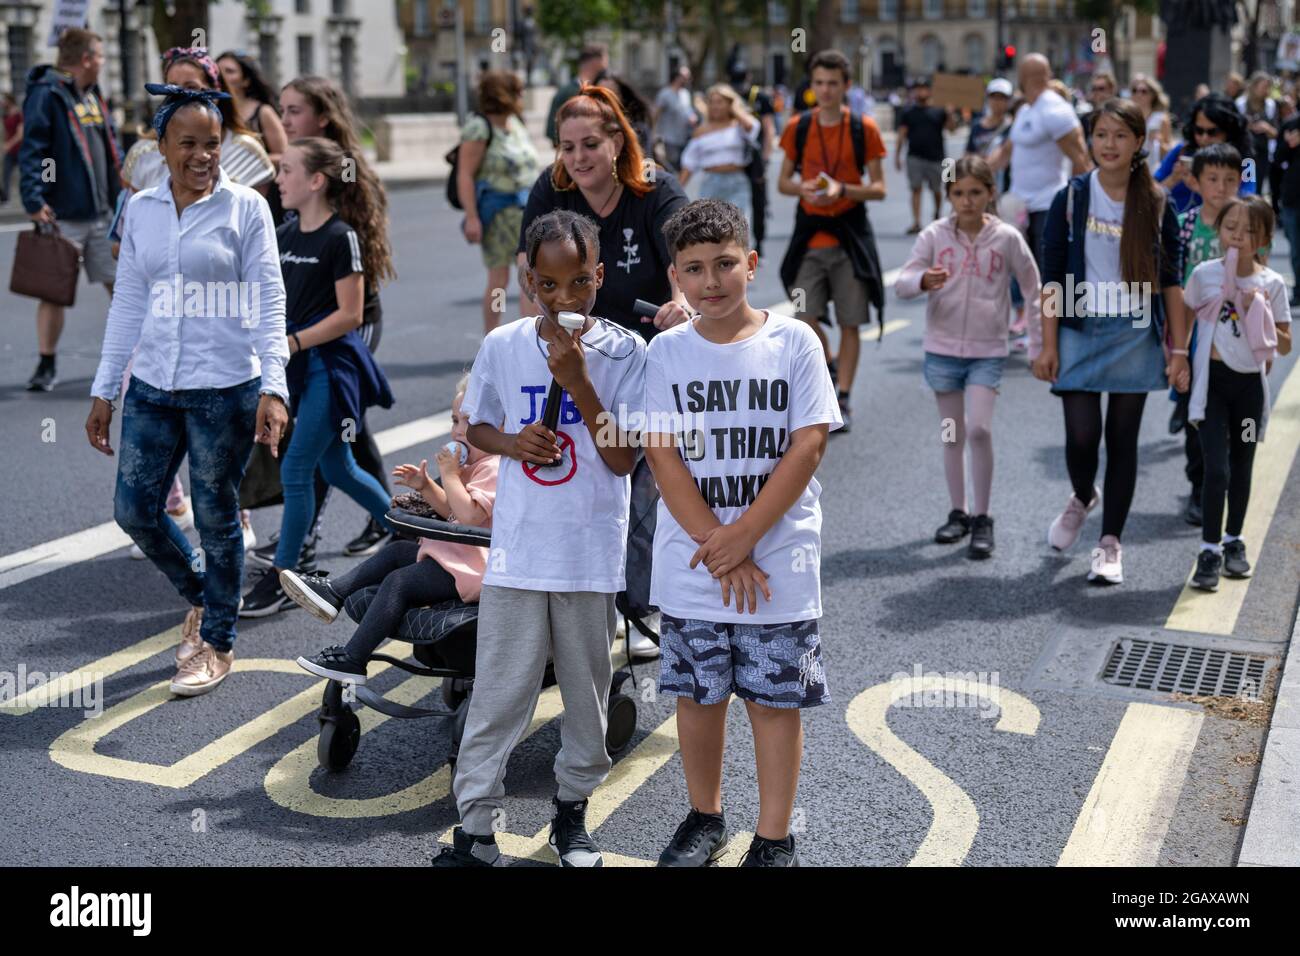 Londres, Royaume-Uni - juillet 31 2021: La marche anti-vaccin pour enfants du London Eye à Trafalgar Square Credit: Thomas Eddy/Alay Live News Banque D'Images